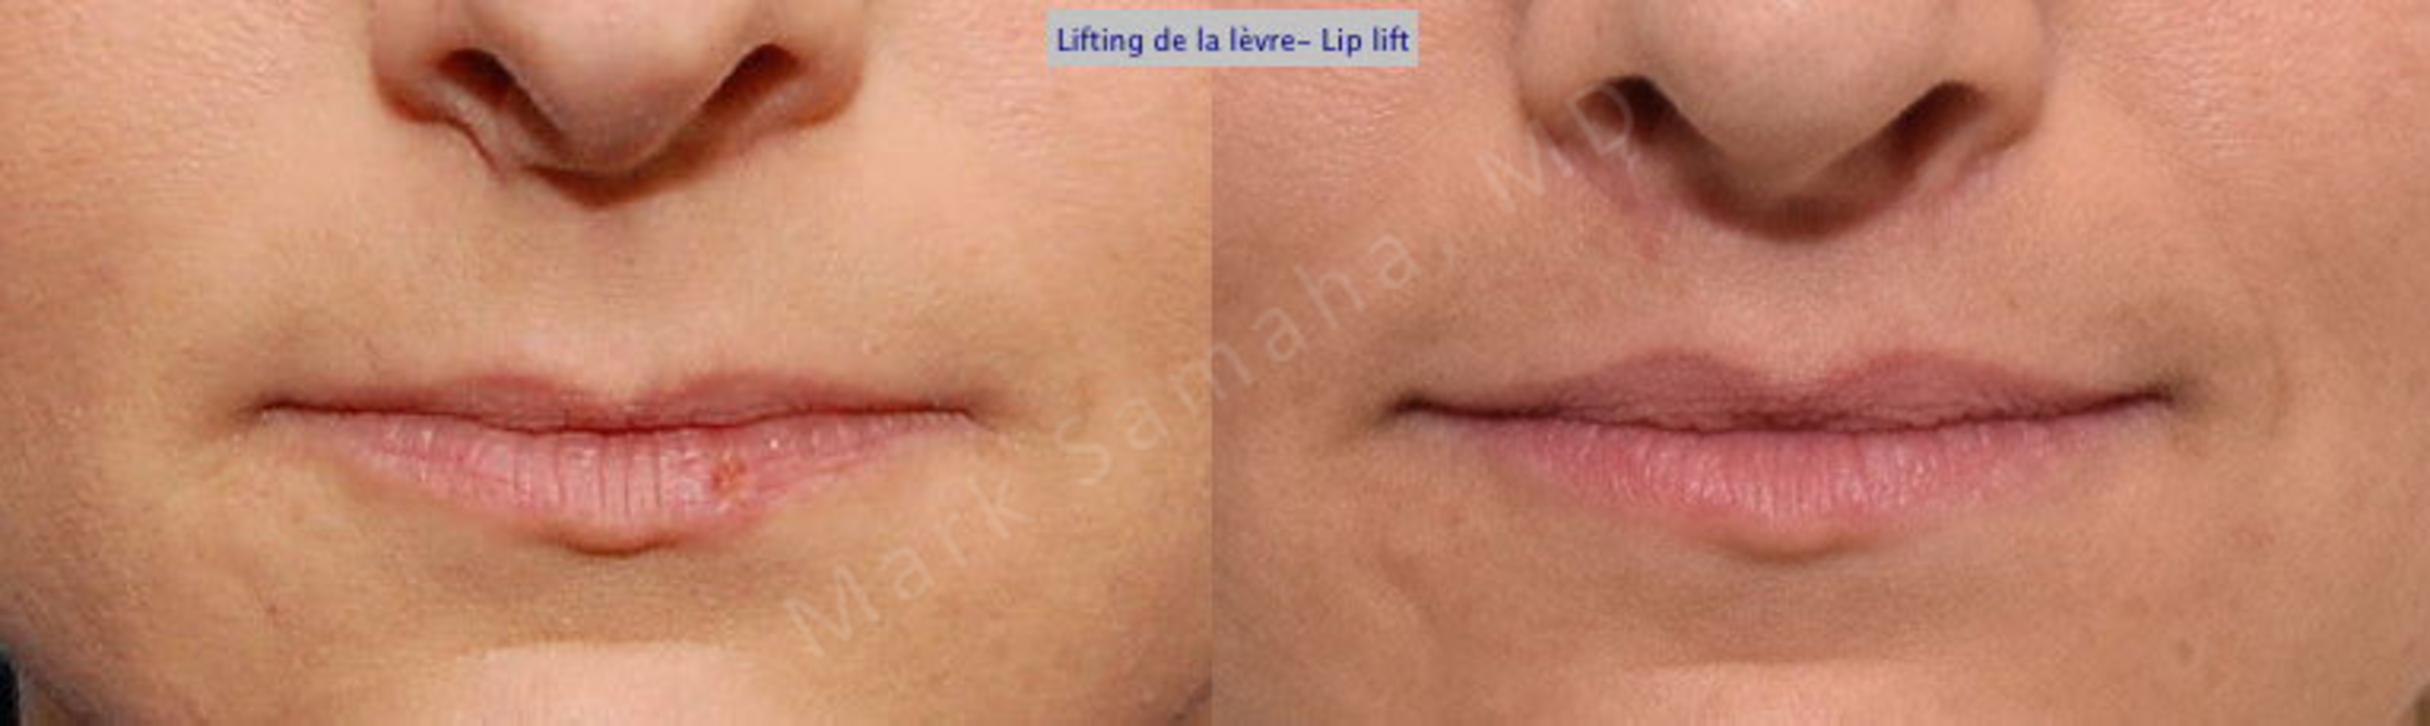 Before & After Lifting de la lèvre supérieure / Lip Lift  Case 25 View #1 View in Mount Royal, QC